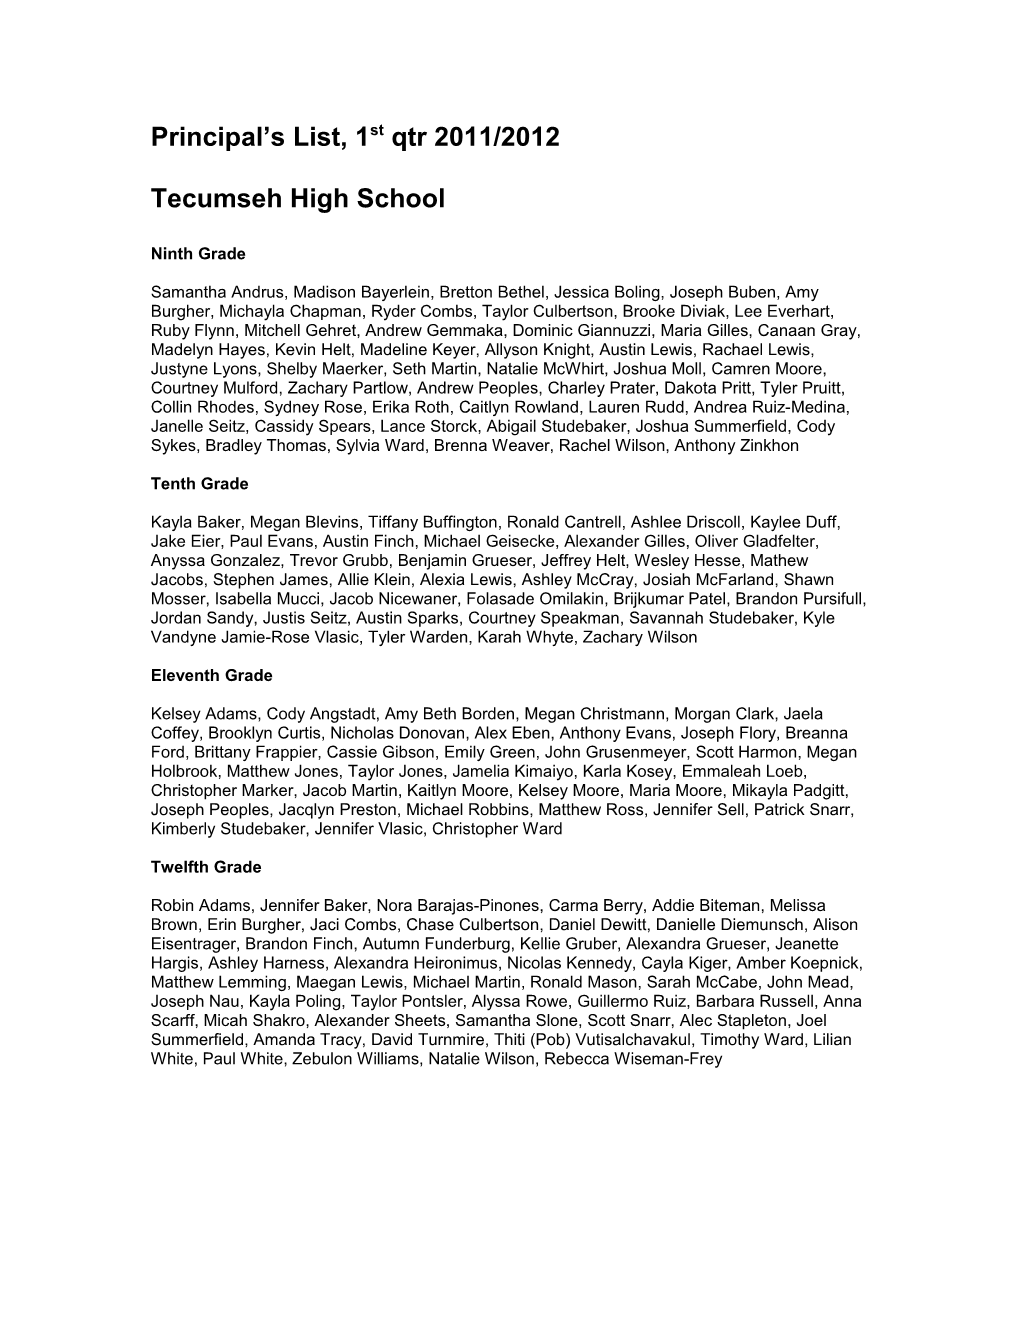 Principal S List, 1St Qtr 2009/2010